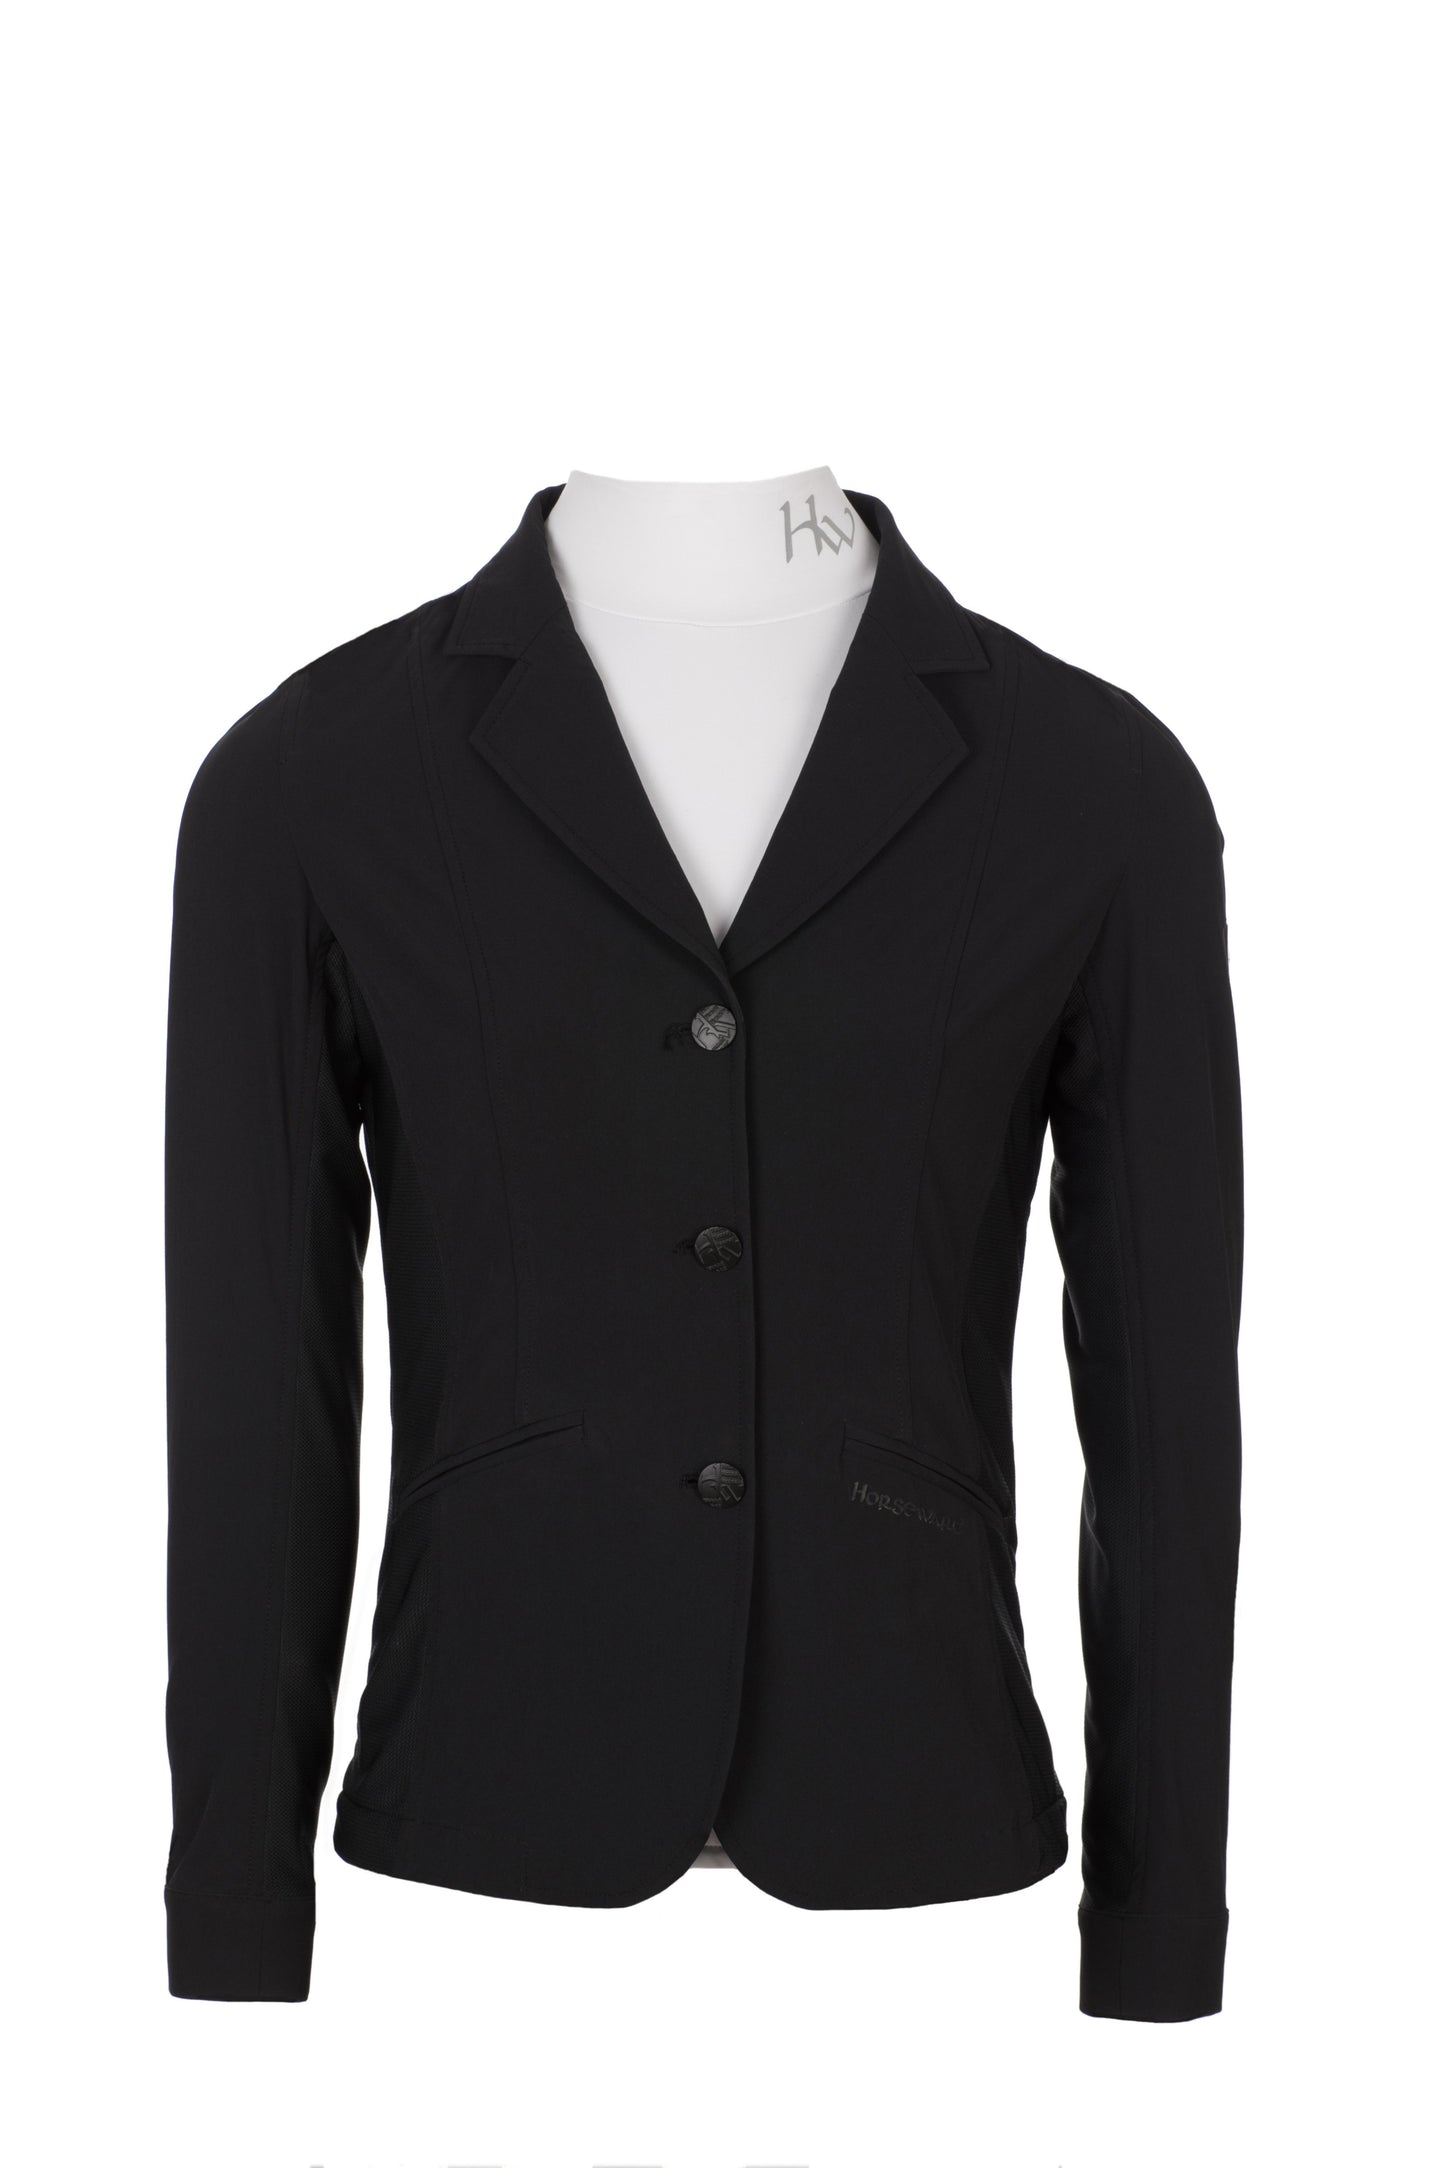 Horseware Air MK2 Ladies Competition Jacket Black